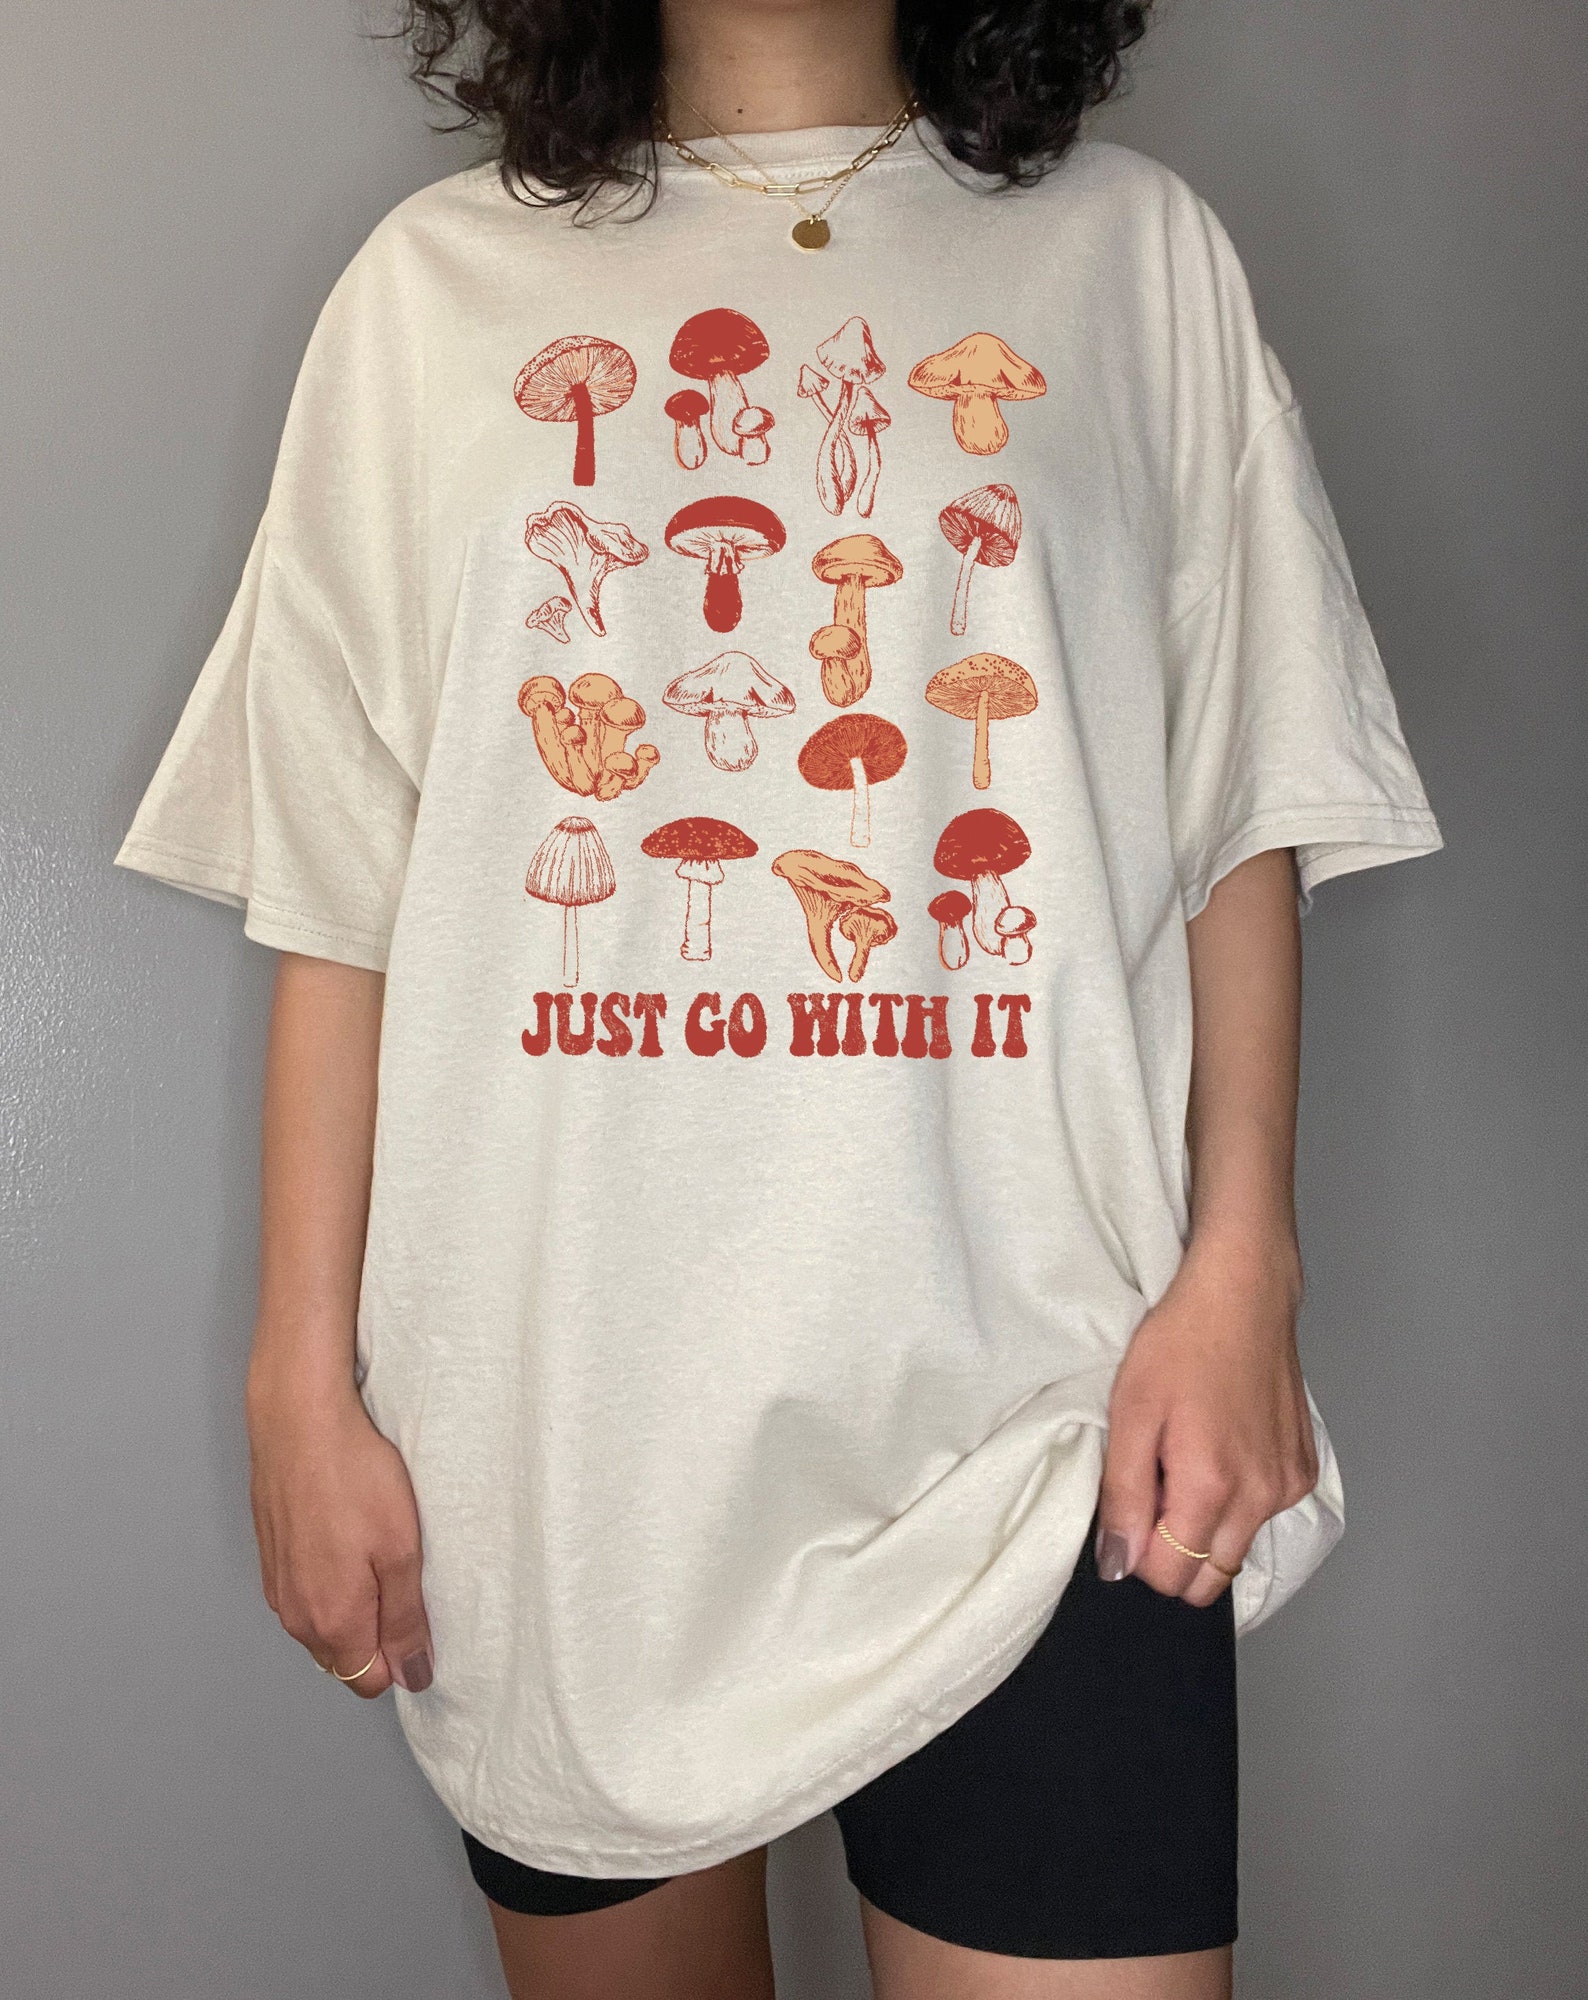 Mushroom Shirt Botanical Aesthetic Clothing Magic Mushroom T - Etsy Sweden